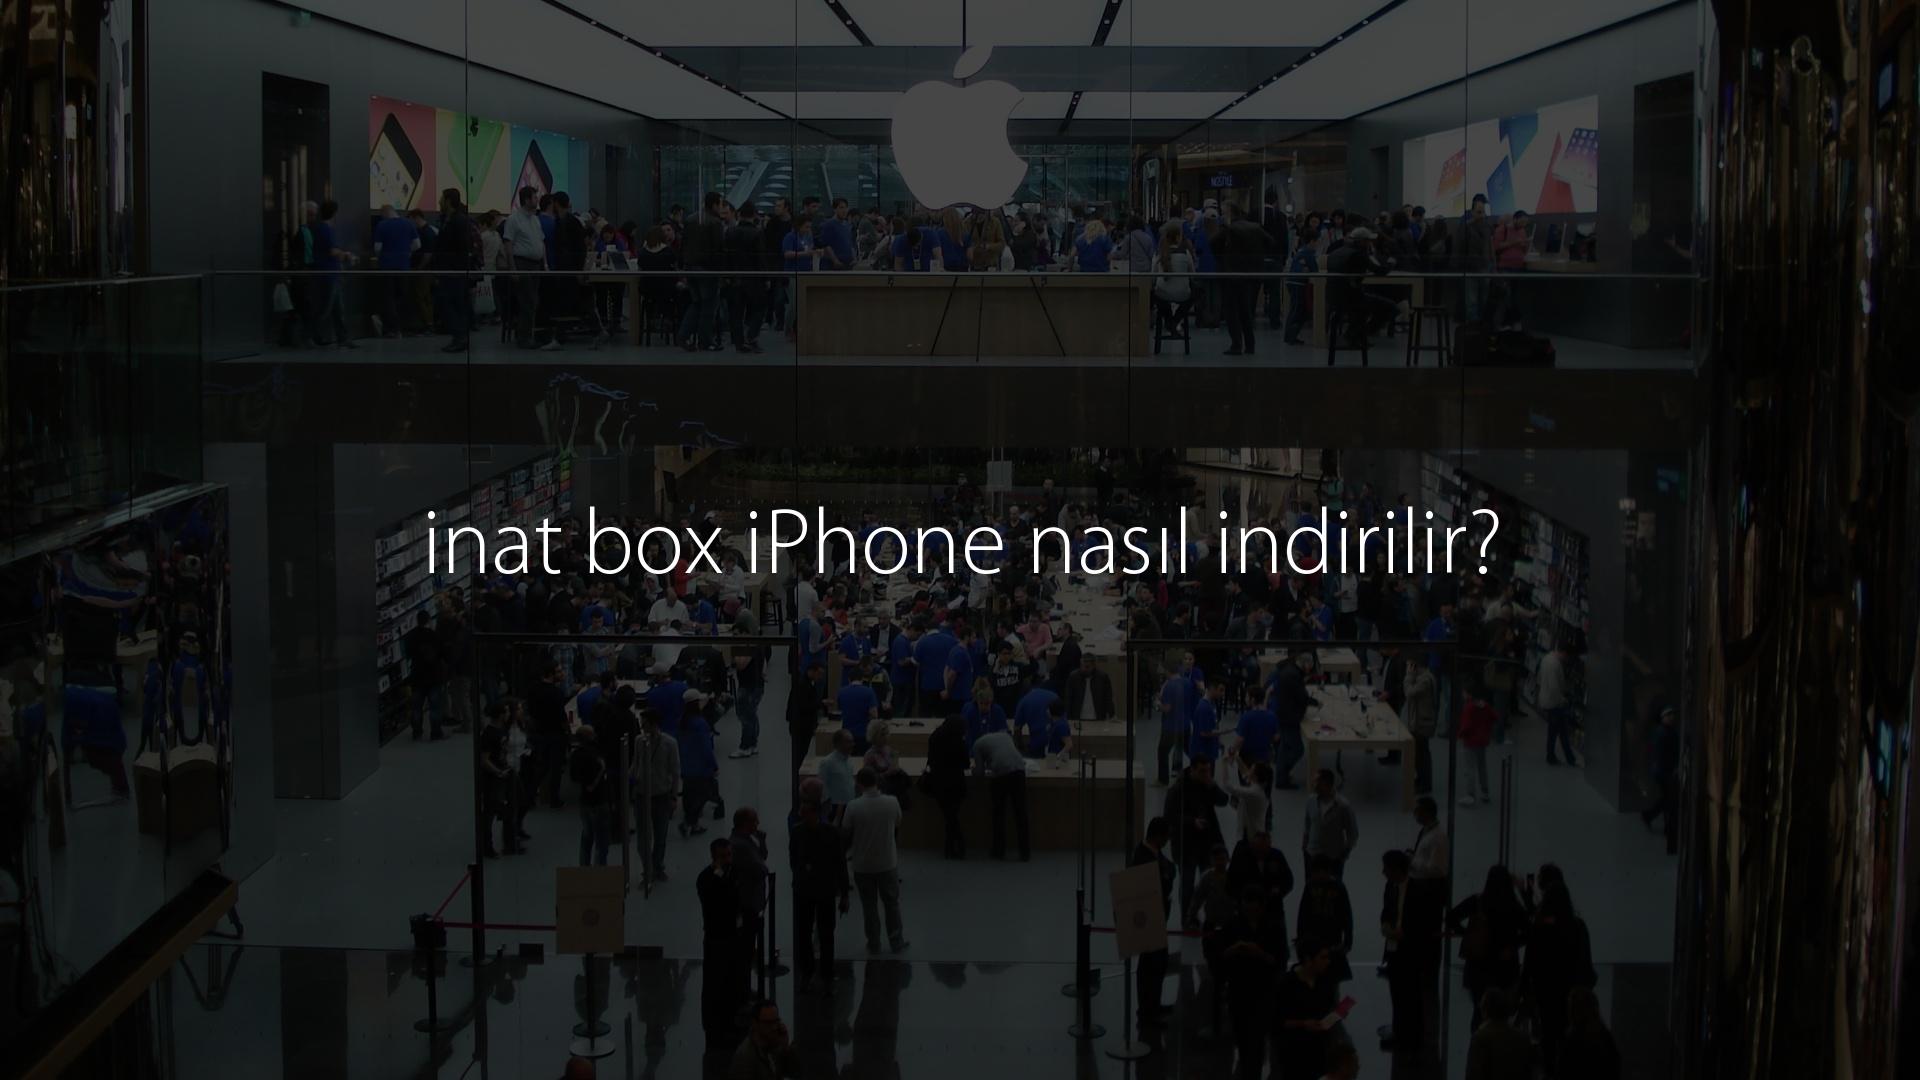 inat box iPhone nasıl indirilir?